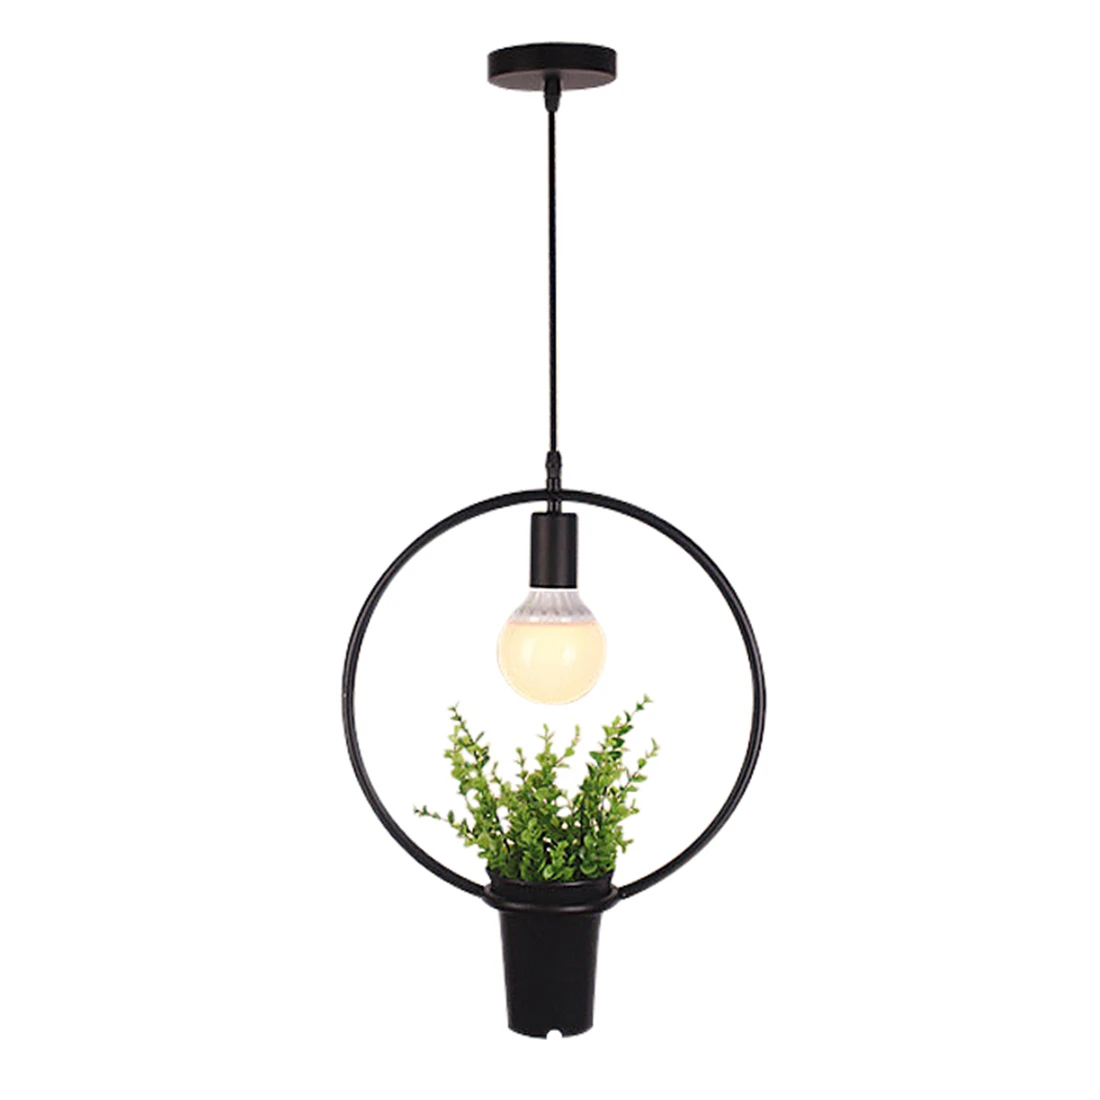 Черное кольцо зеленое растение подвесные лампы Ретро промышленный ветер творческая личность люстра магазин одежды кафе ресторан свет